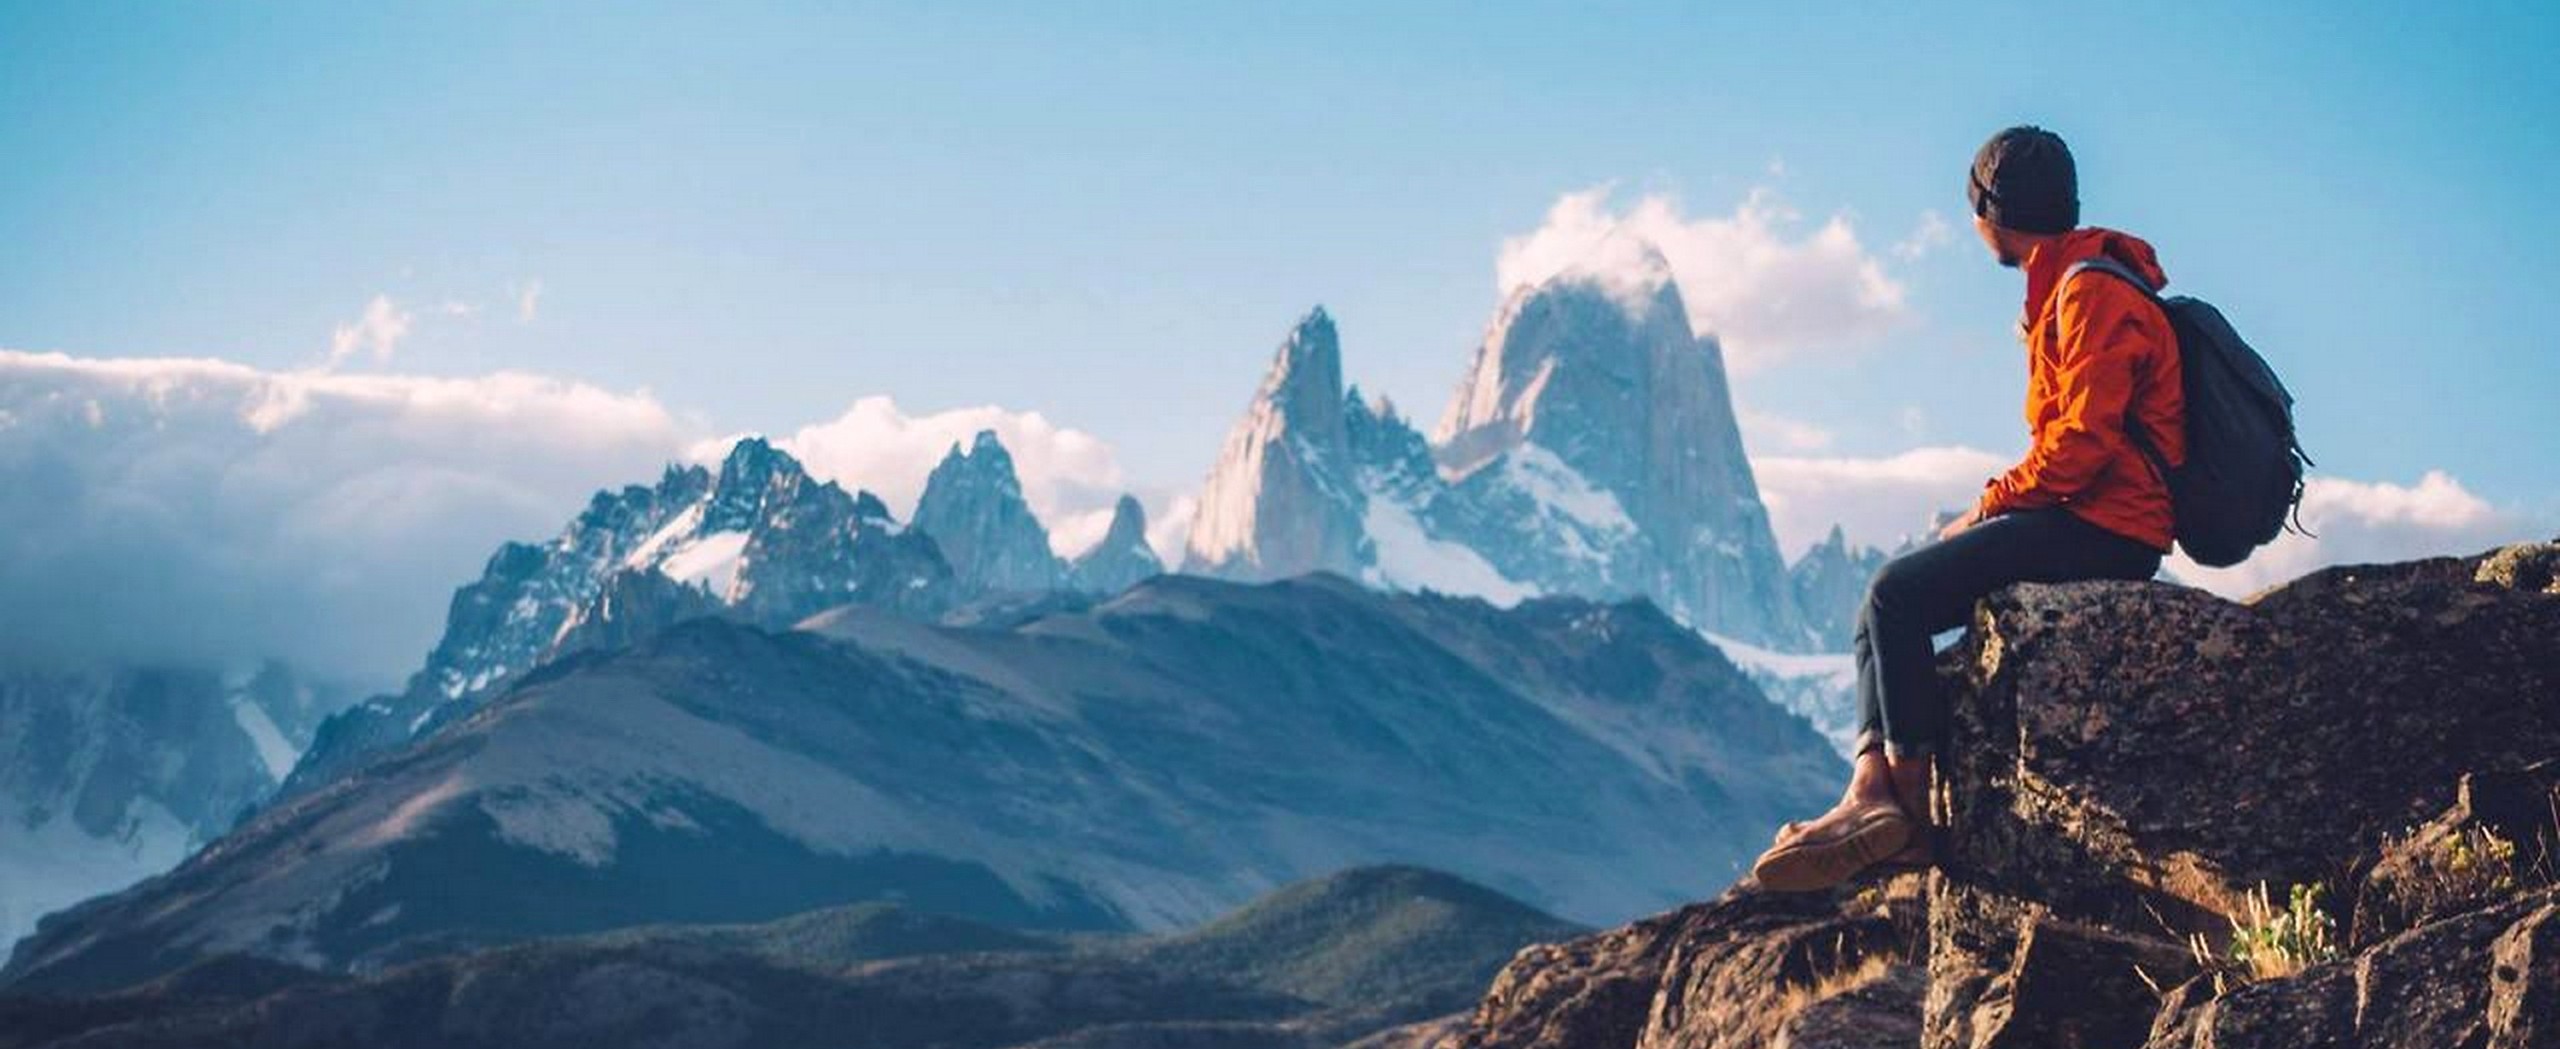 Trek and Self-Drive in Patagonia